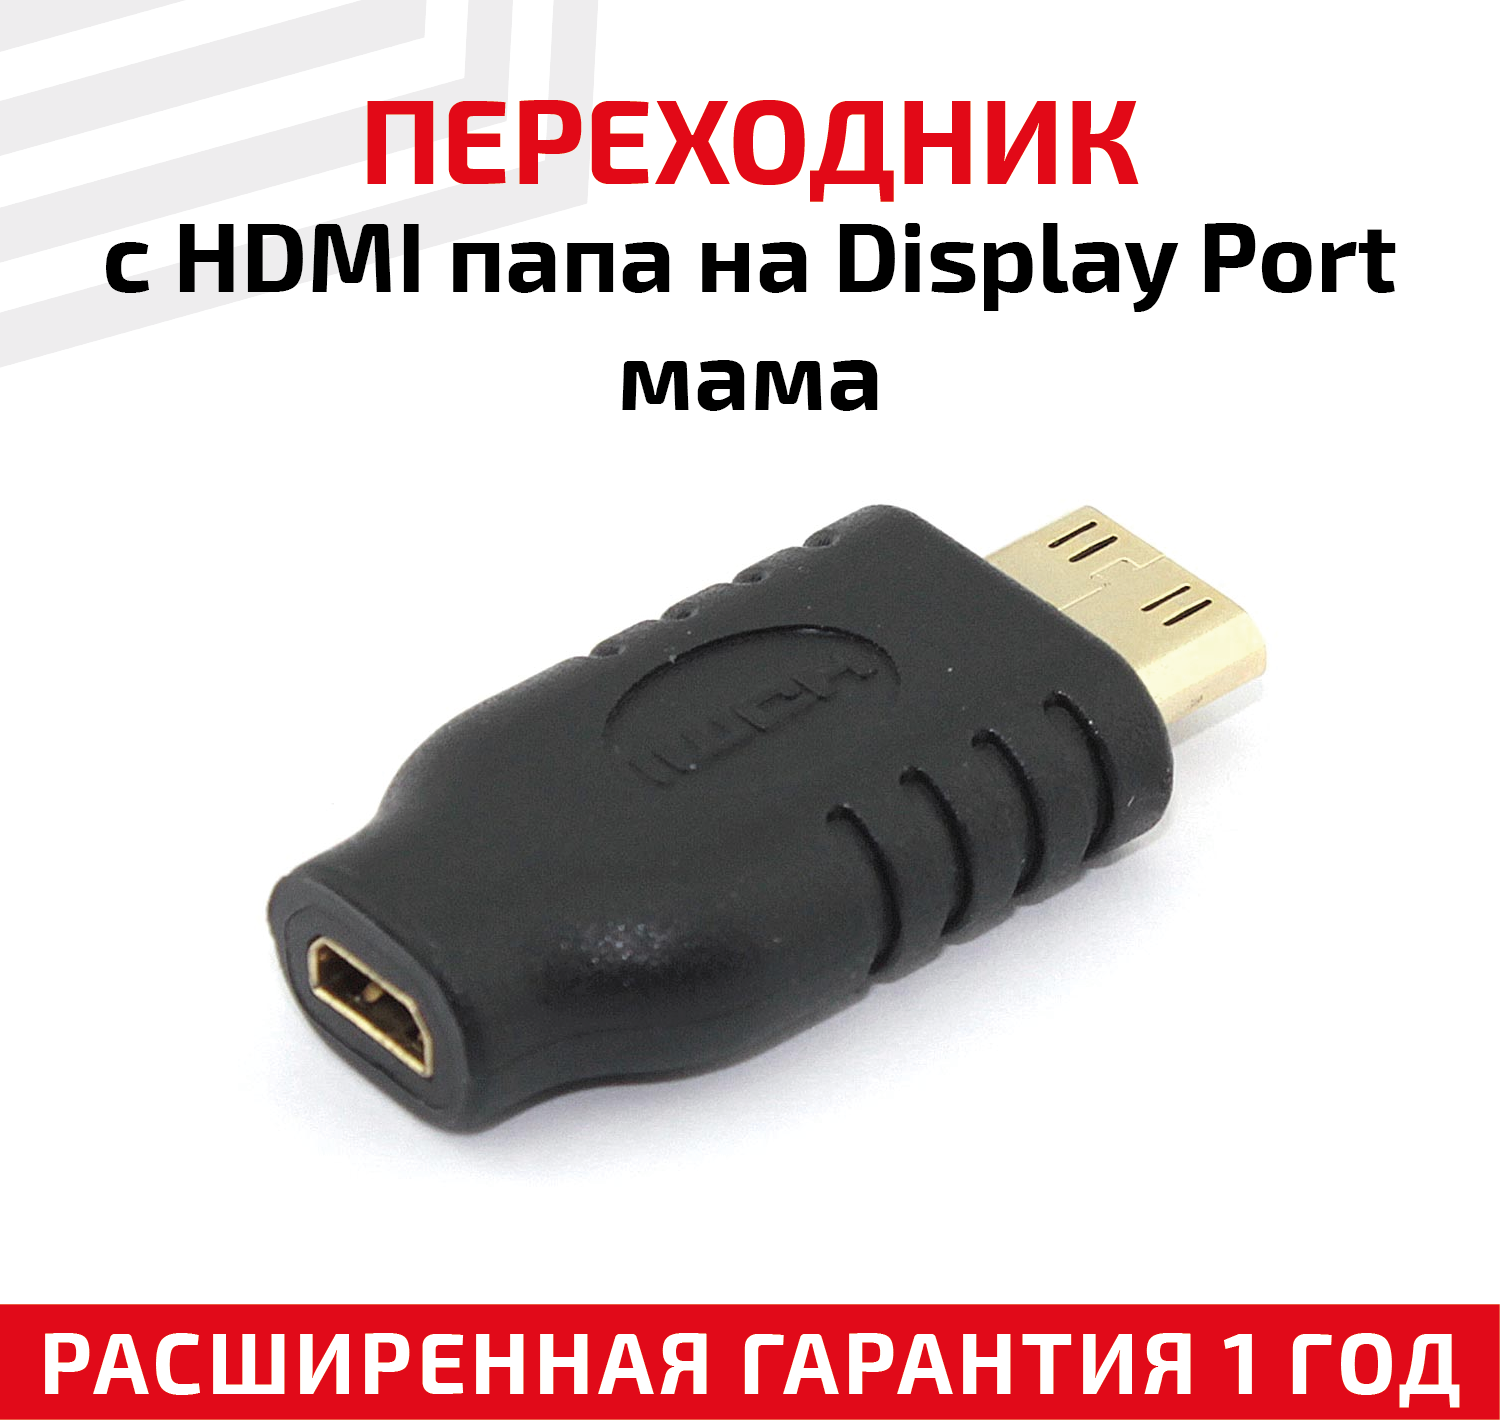 Переходник с HDMI папа на Display Port мама